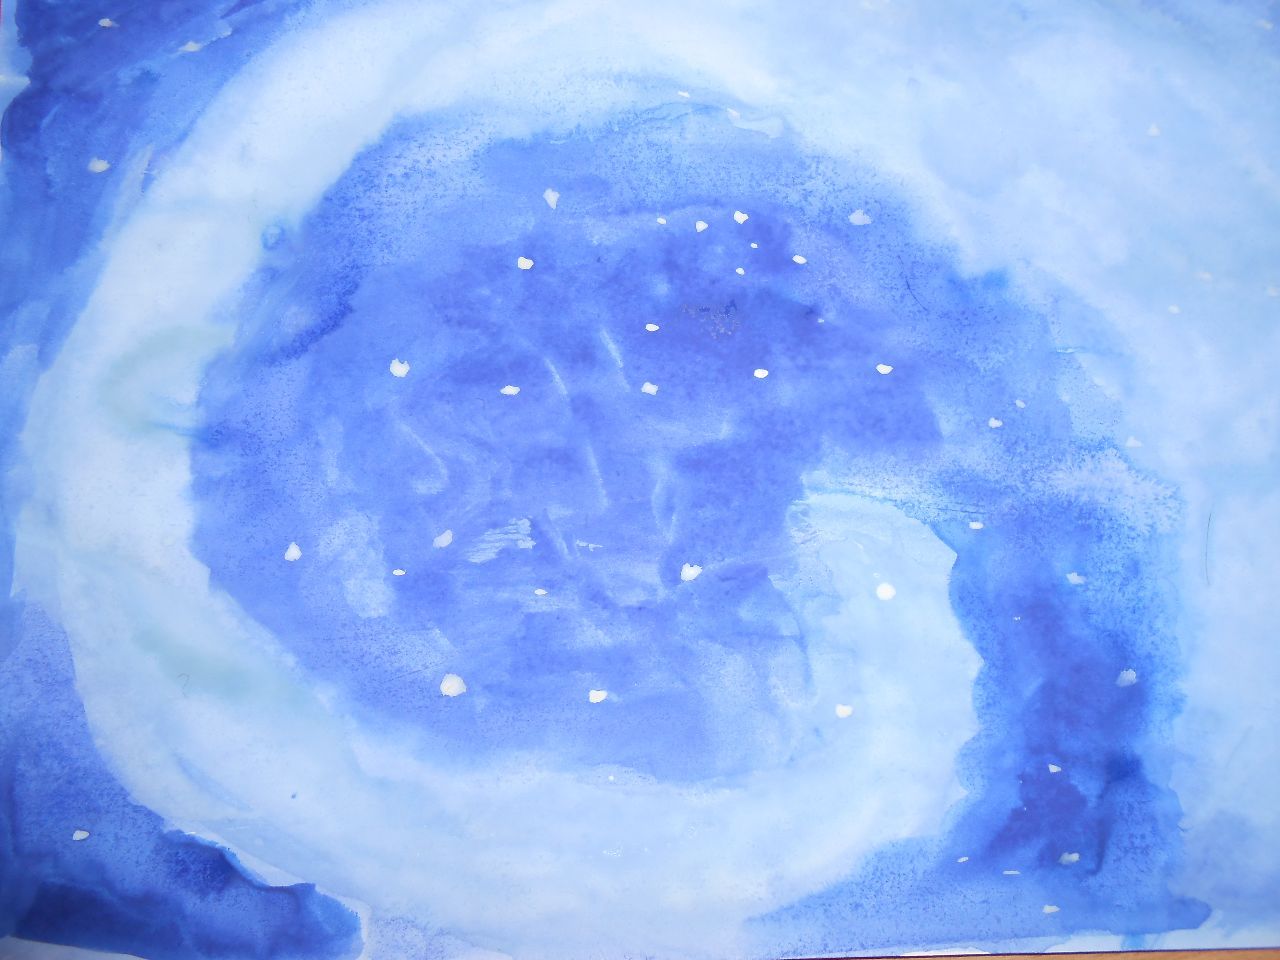 Три голубых рисунка - это я зарисовала ночное небо, после выдоха, как оно нам ответило - Мои рисунки